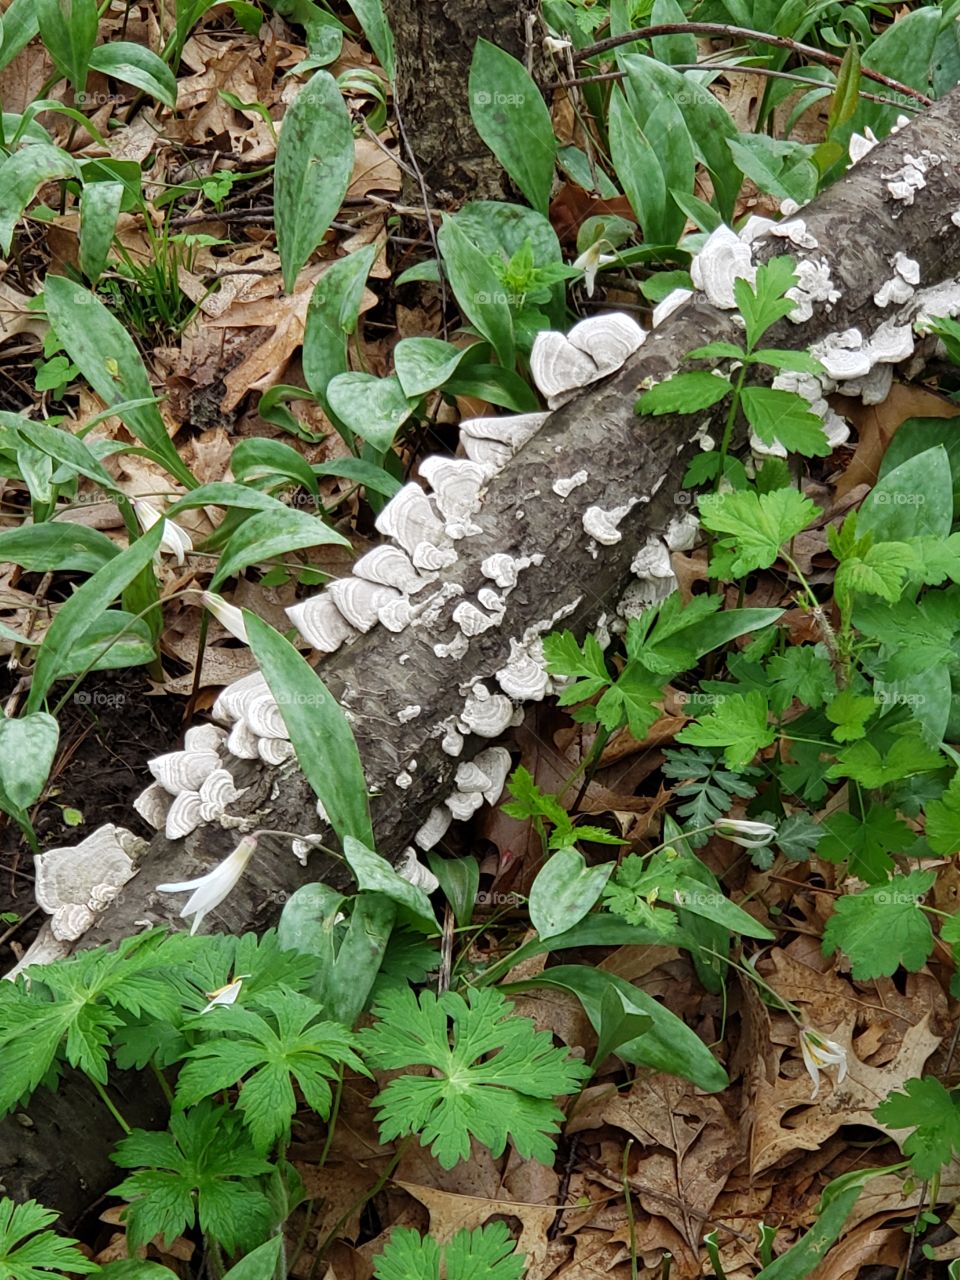 fungus on fallen trunk